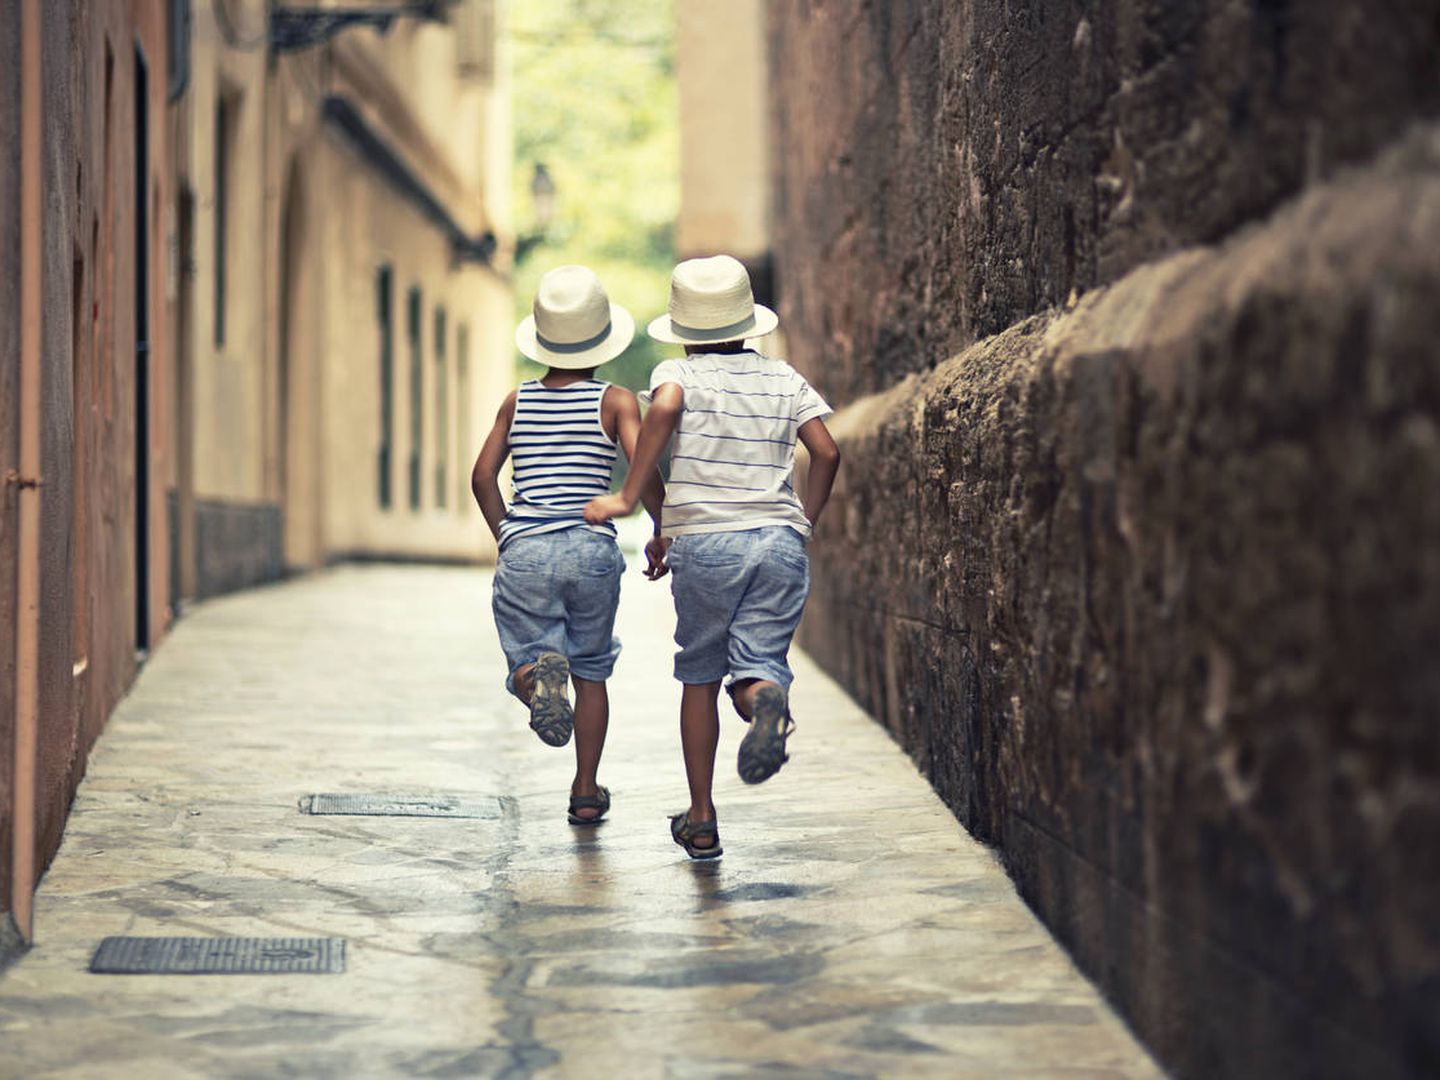 Niños corren en una calle de Palma. (iStock)